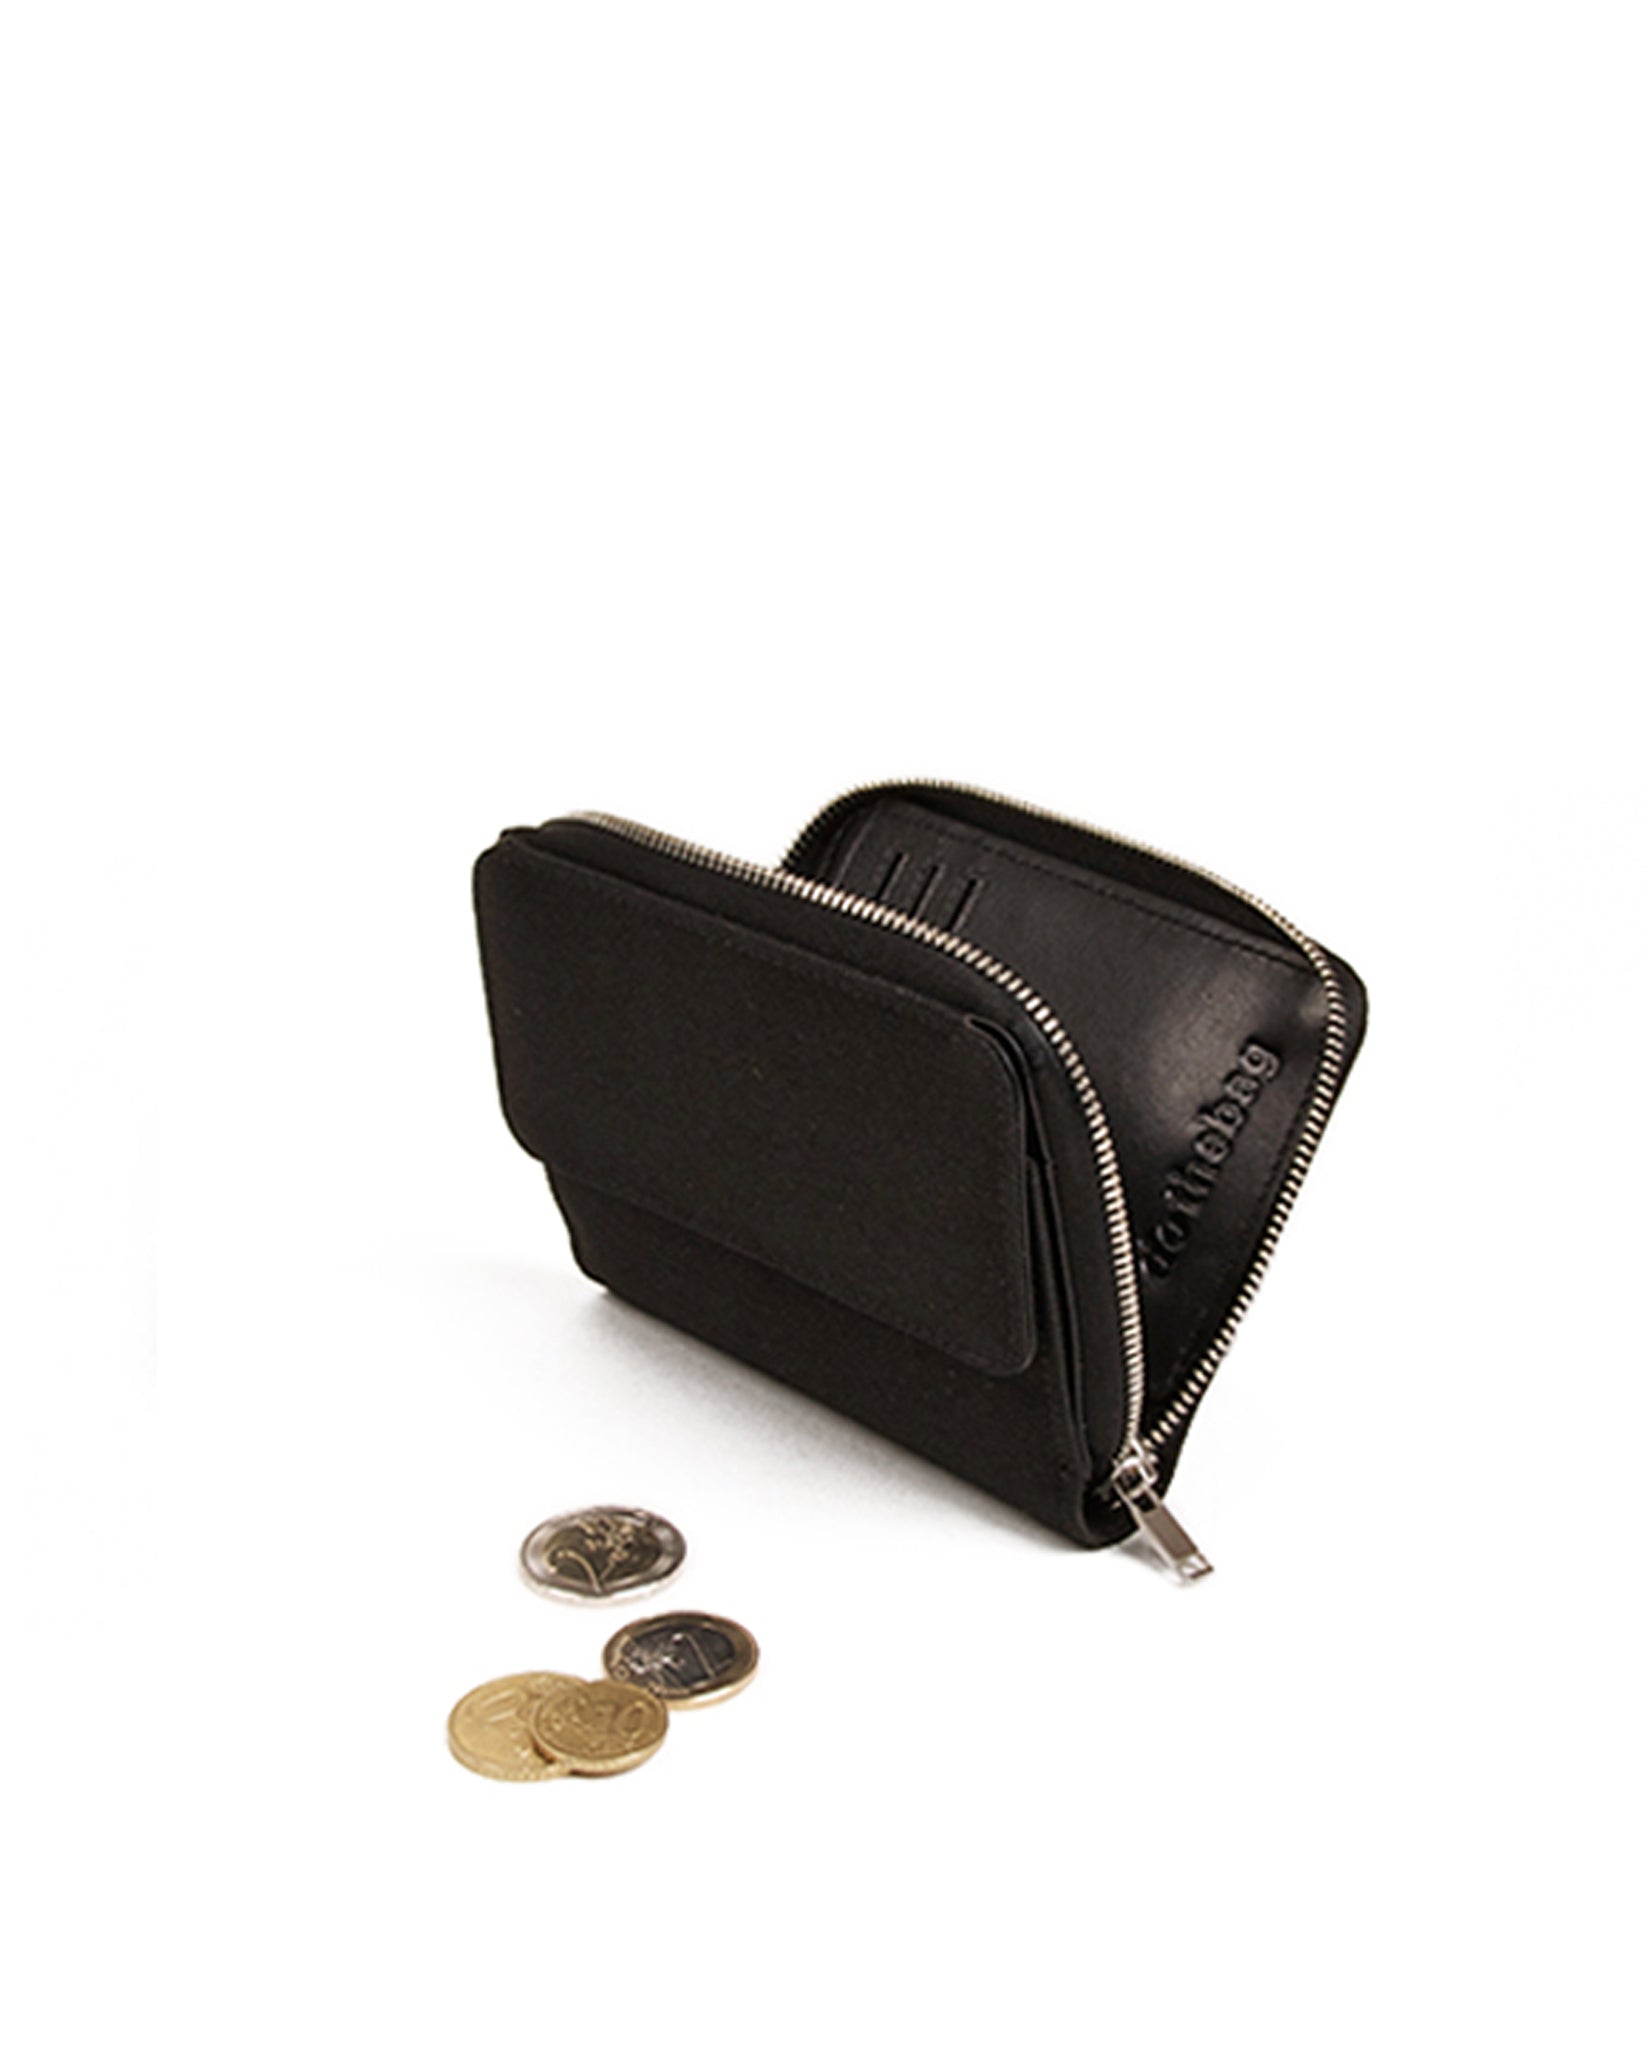 dothebag accessories wallet zip flap convertible